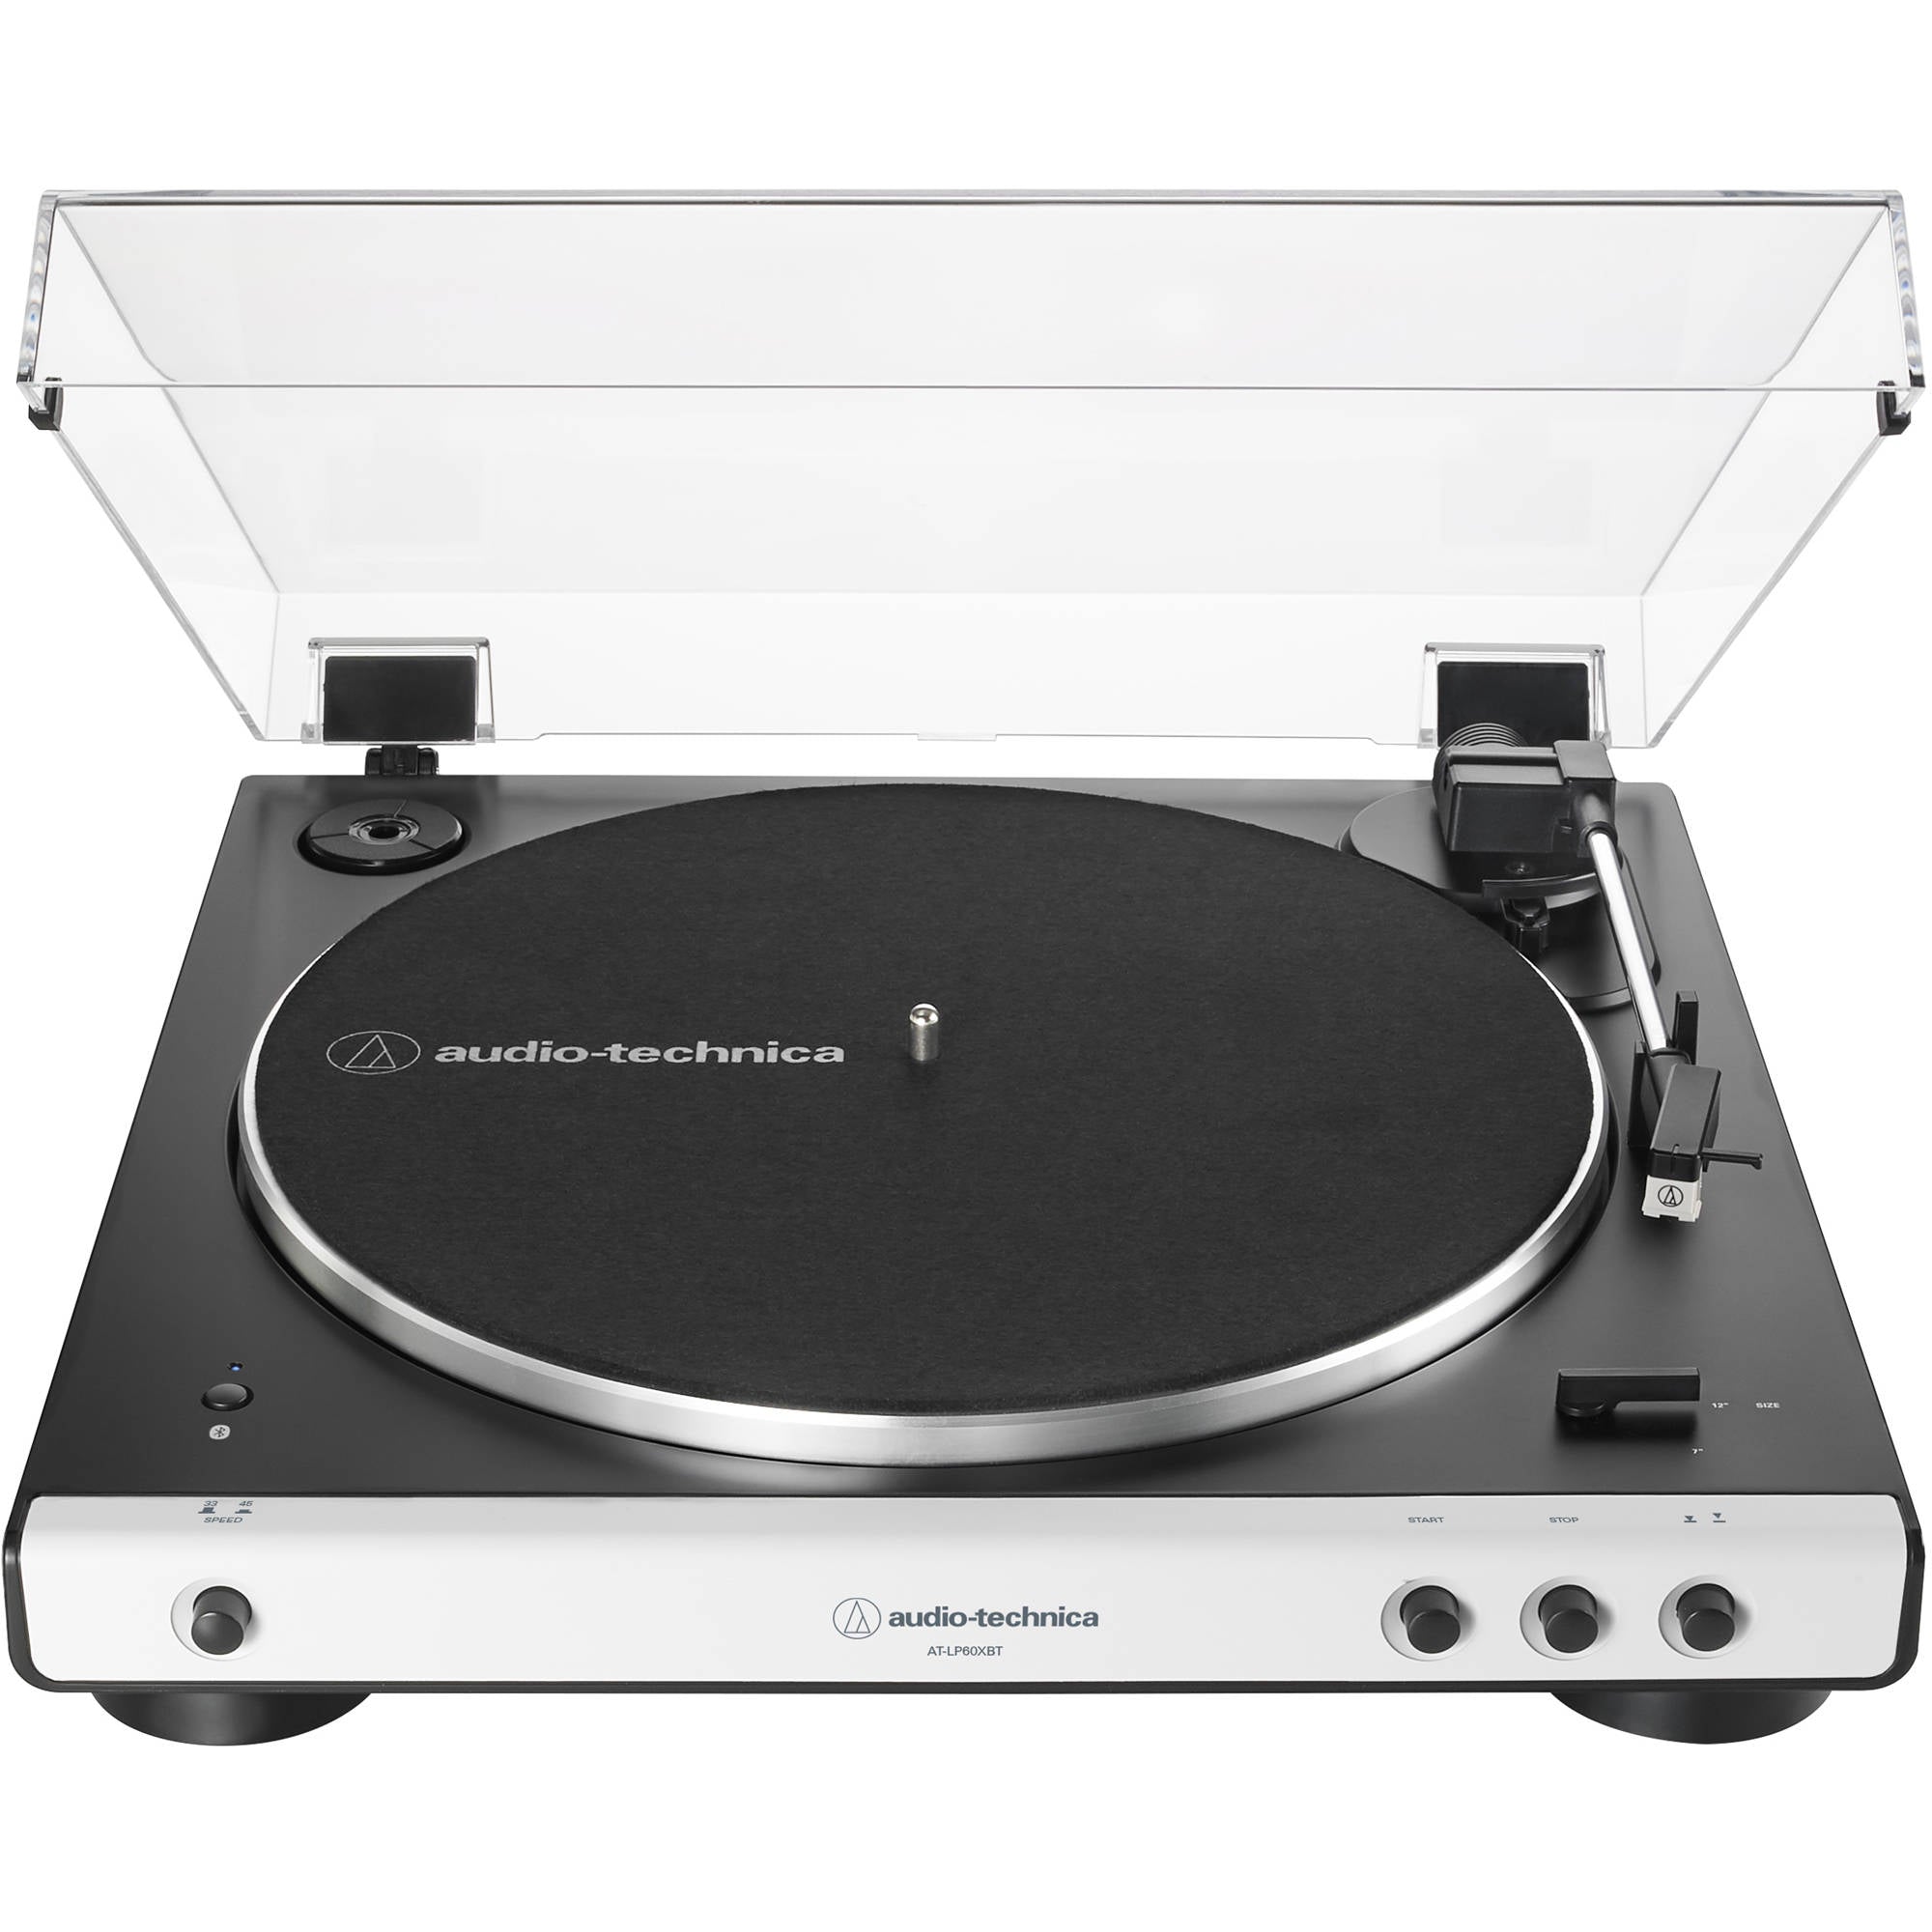 Audio-Technica Consumer AT-LP60XBT stéréo Turntable avec Bluetooth (blanc et noir)